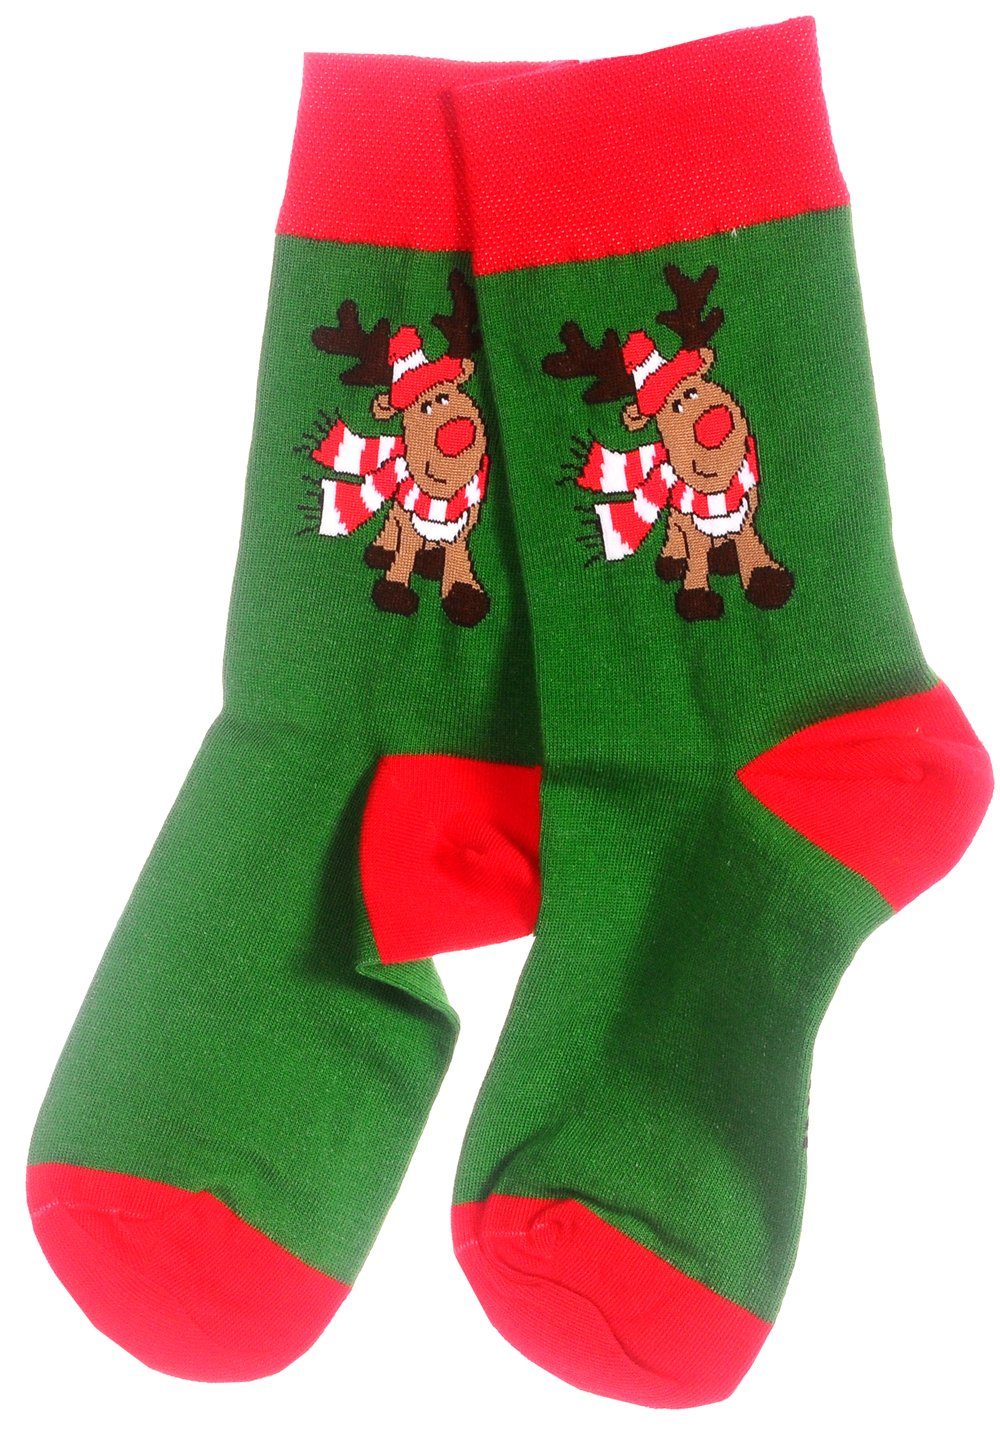 Martinex Socken Lustige bunte witzige Strümpfe 35 38 39 42 43 46 Weihnachtssocken